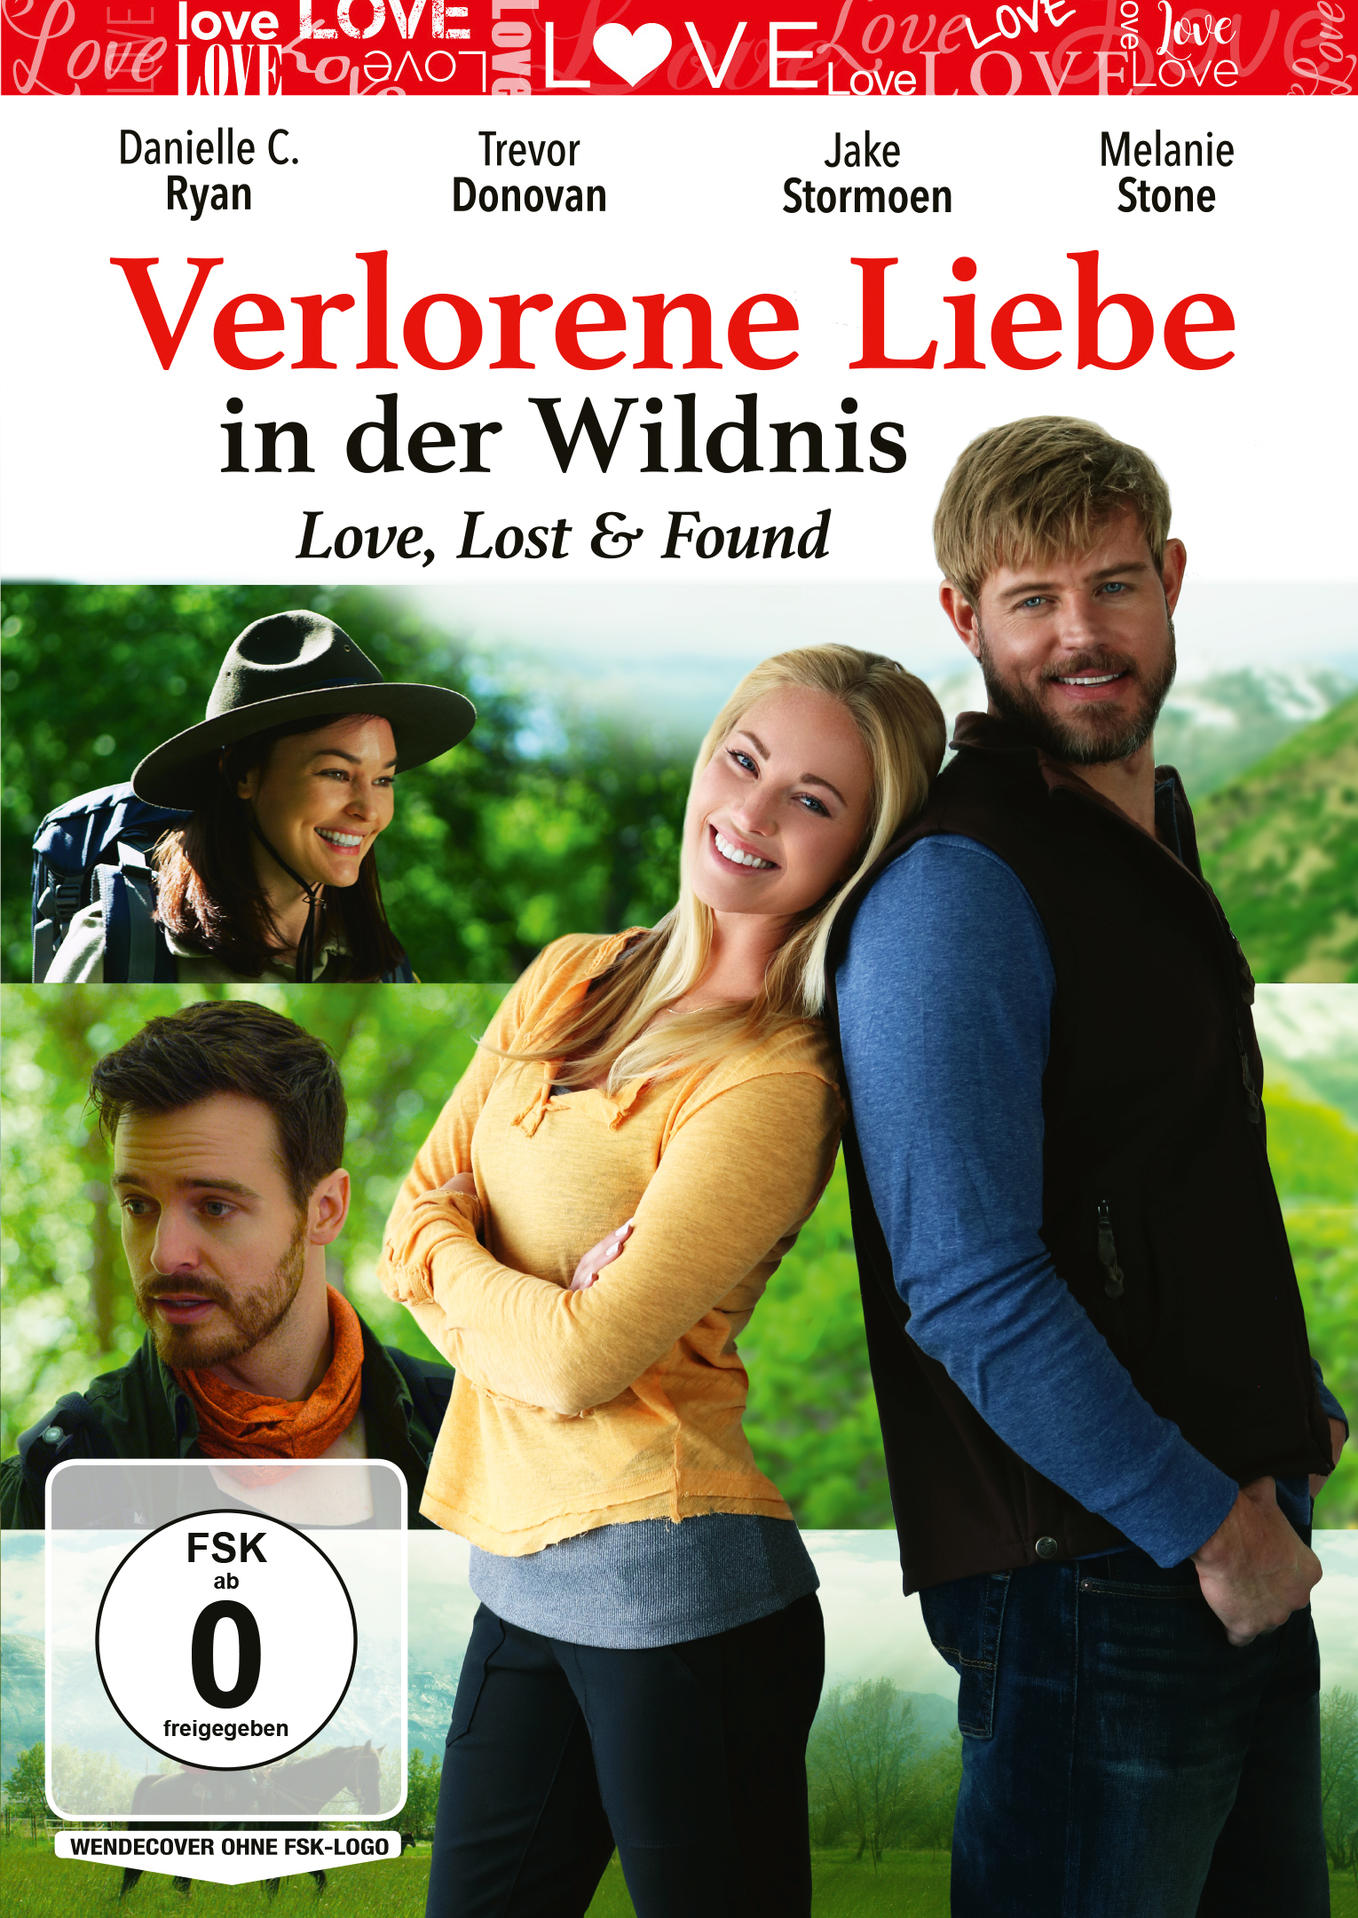 Verlorene Liebe in - & der Found Wildnis Love, Lost DVD